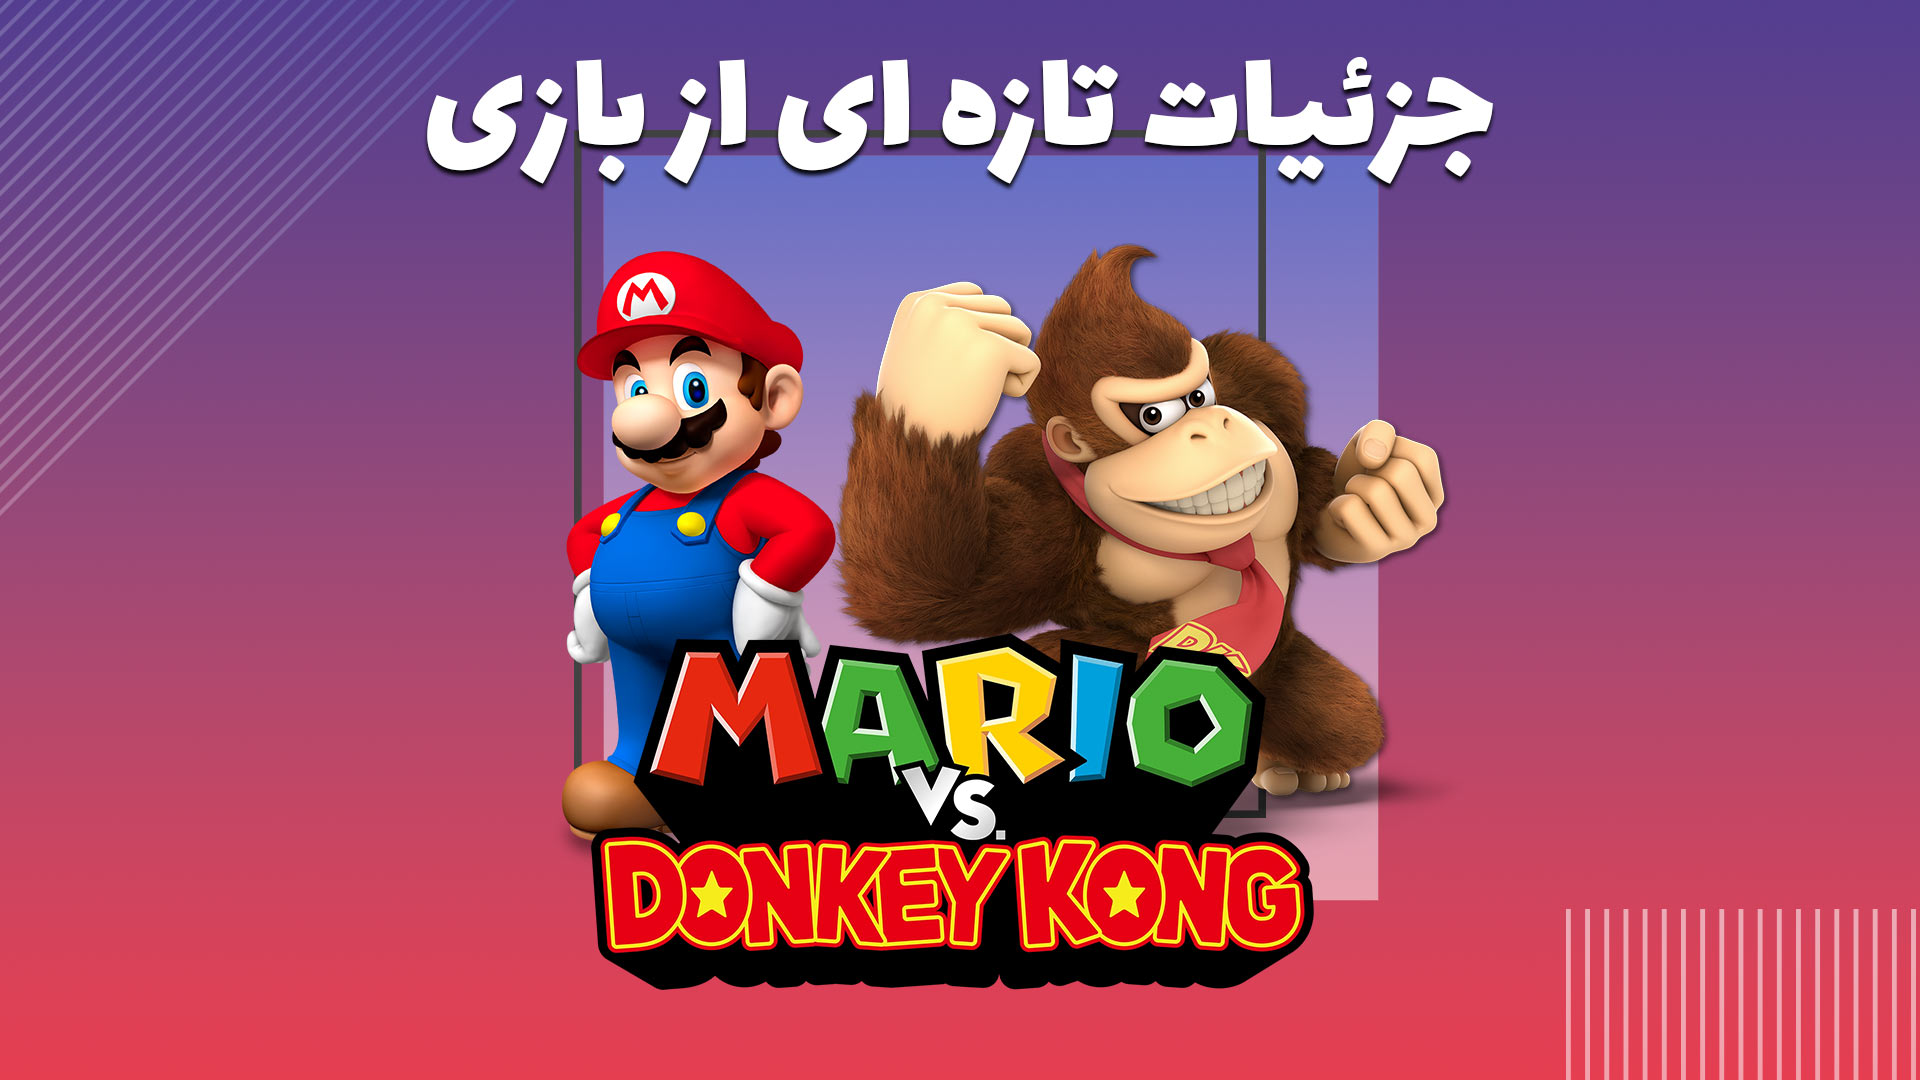 جزئیات تازه ای از بازی Donkey Kong VS Mario منتشر شد